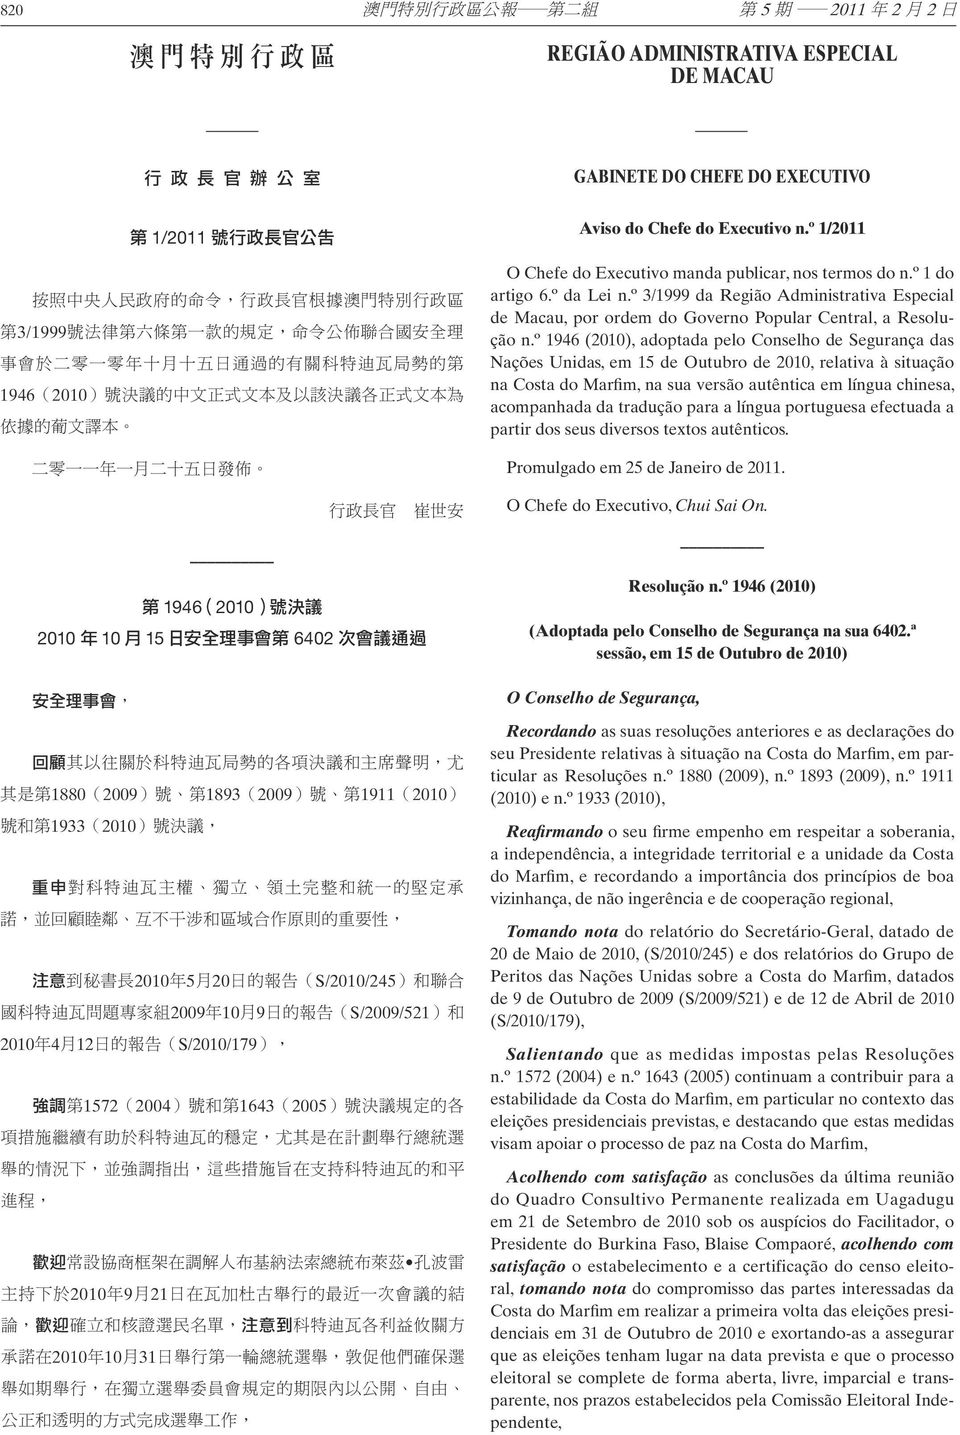 do n.º 1 do artigo 6.º da Lei n.º 3/1999 da Região Administrativa Especial de Macau, por ordem do Governo Popular Central, a Resolução n.